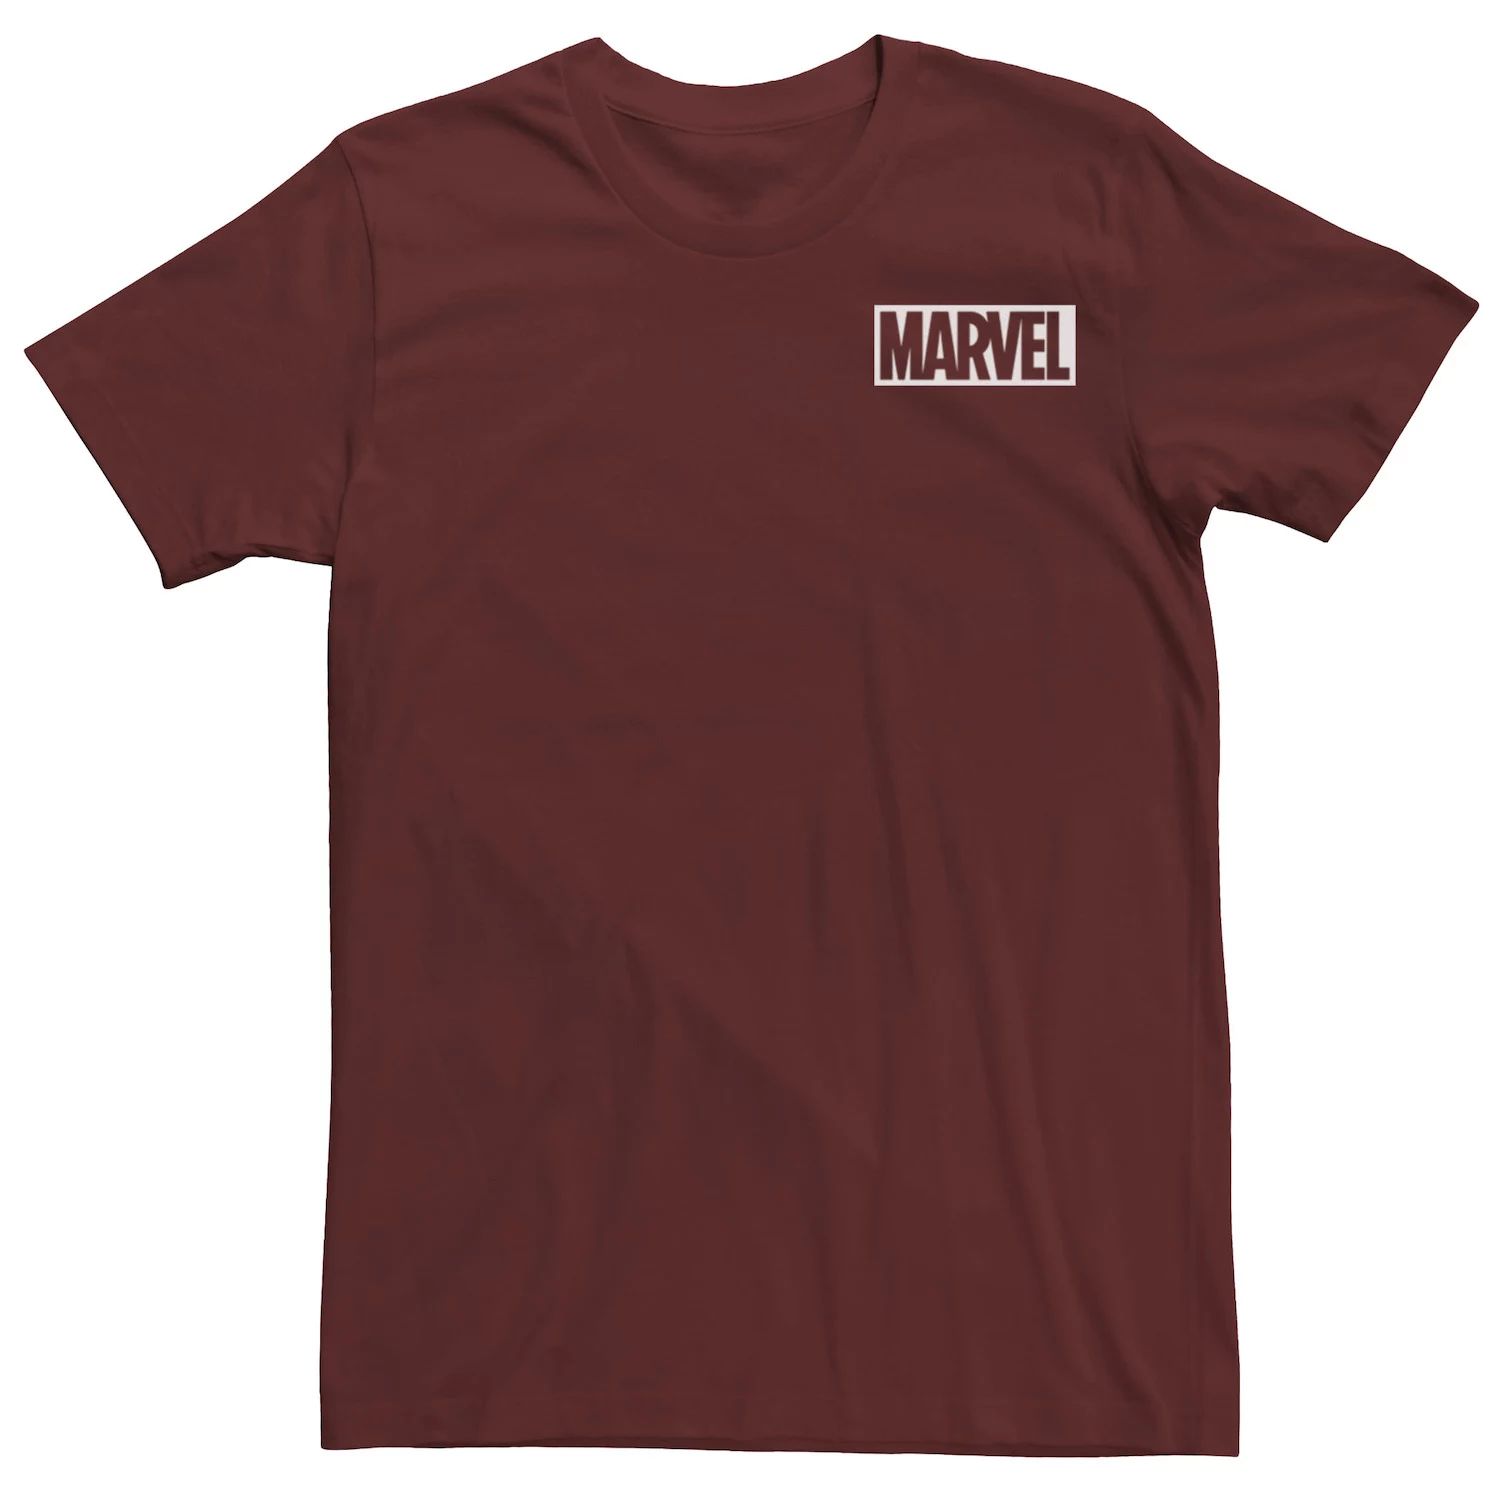 Мужская простая белая футболка с логотипом комиксов Marvel